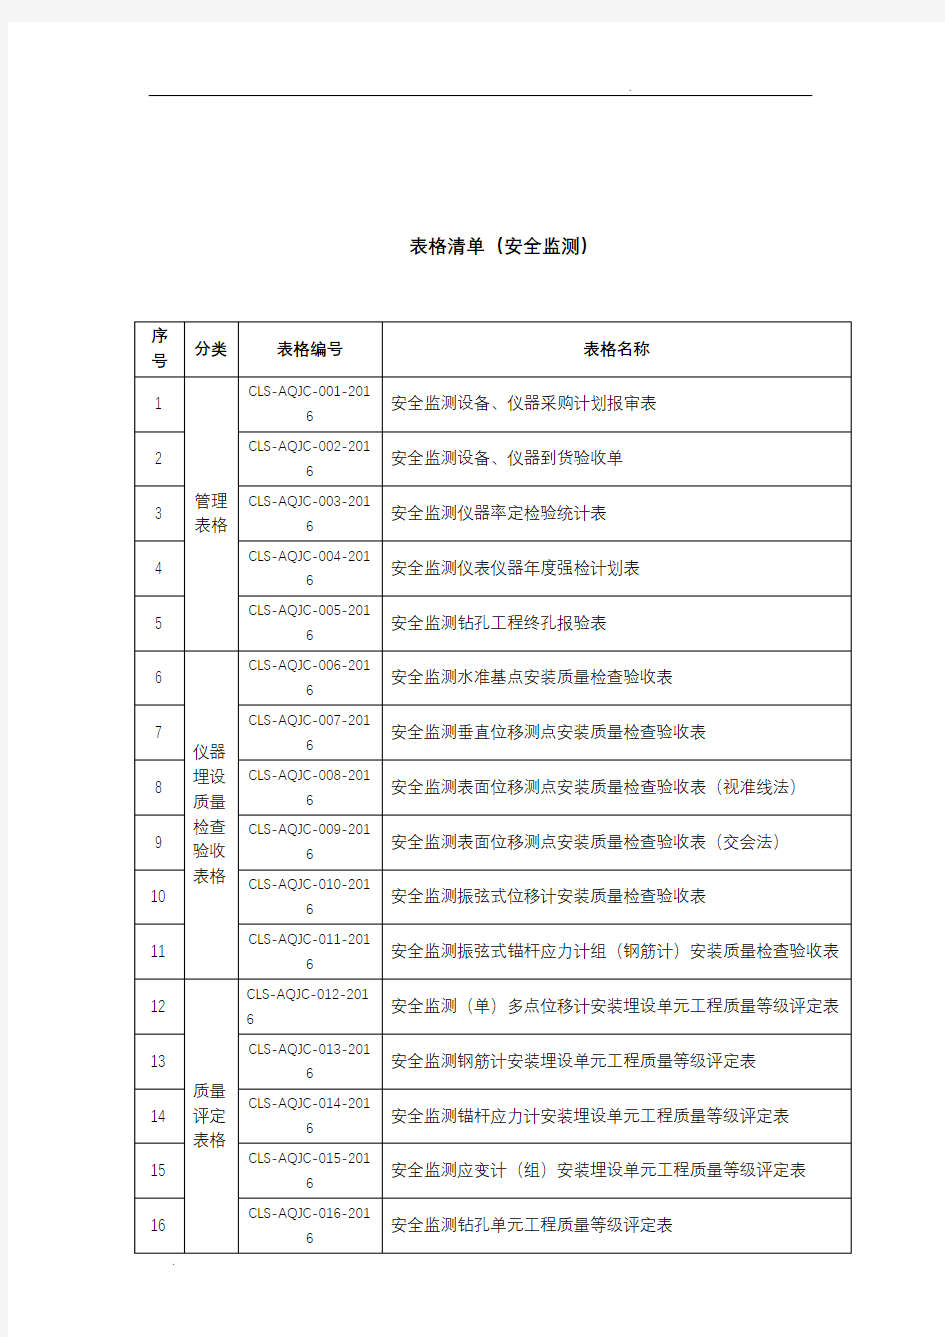 浙江长龙山抽水蓄能电站安全监测表格(报批版)